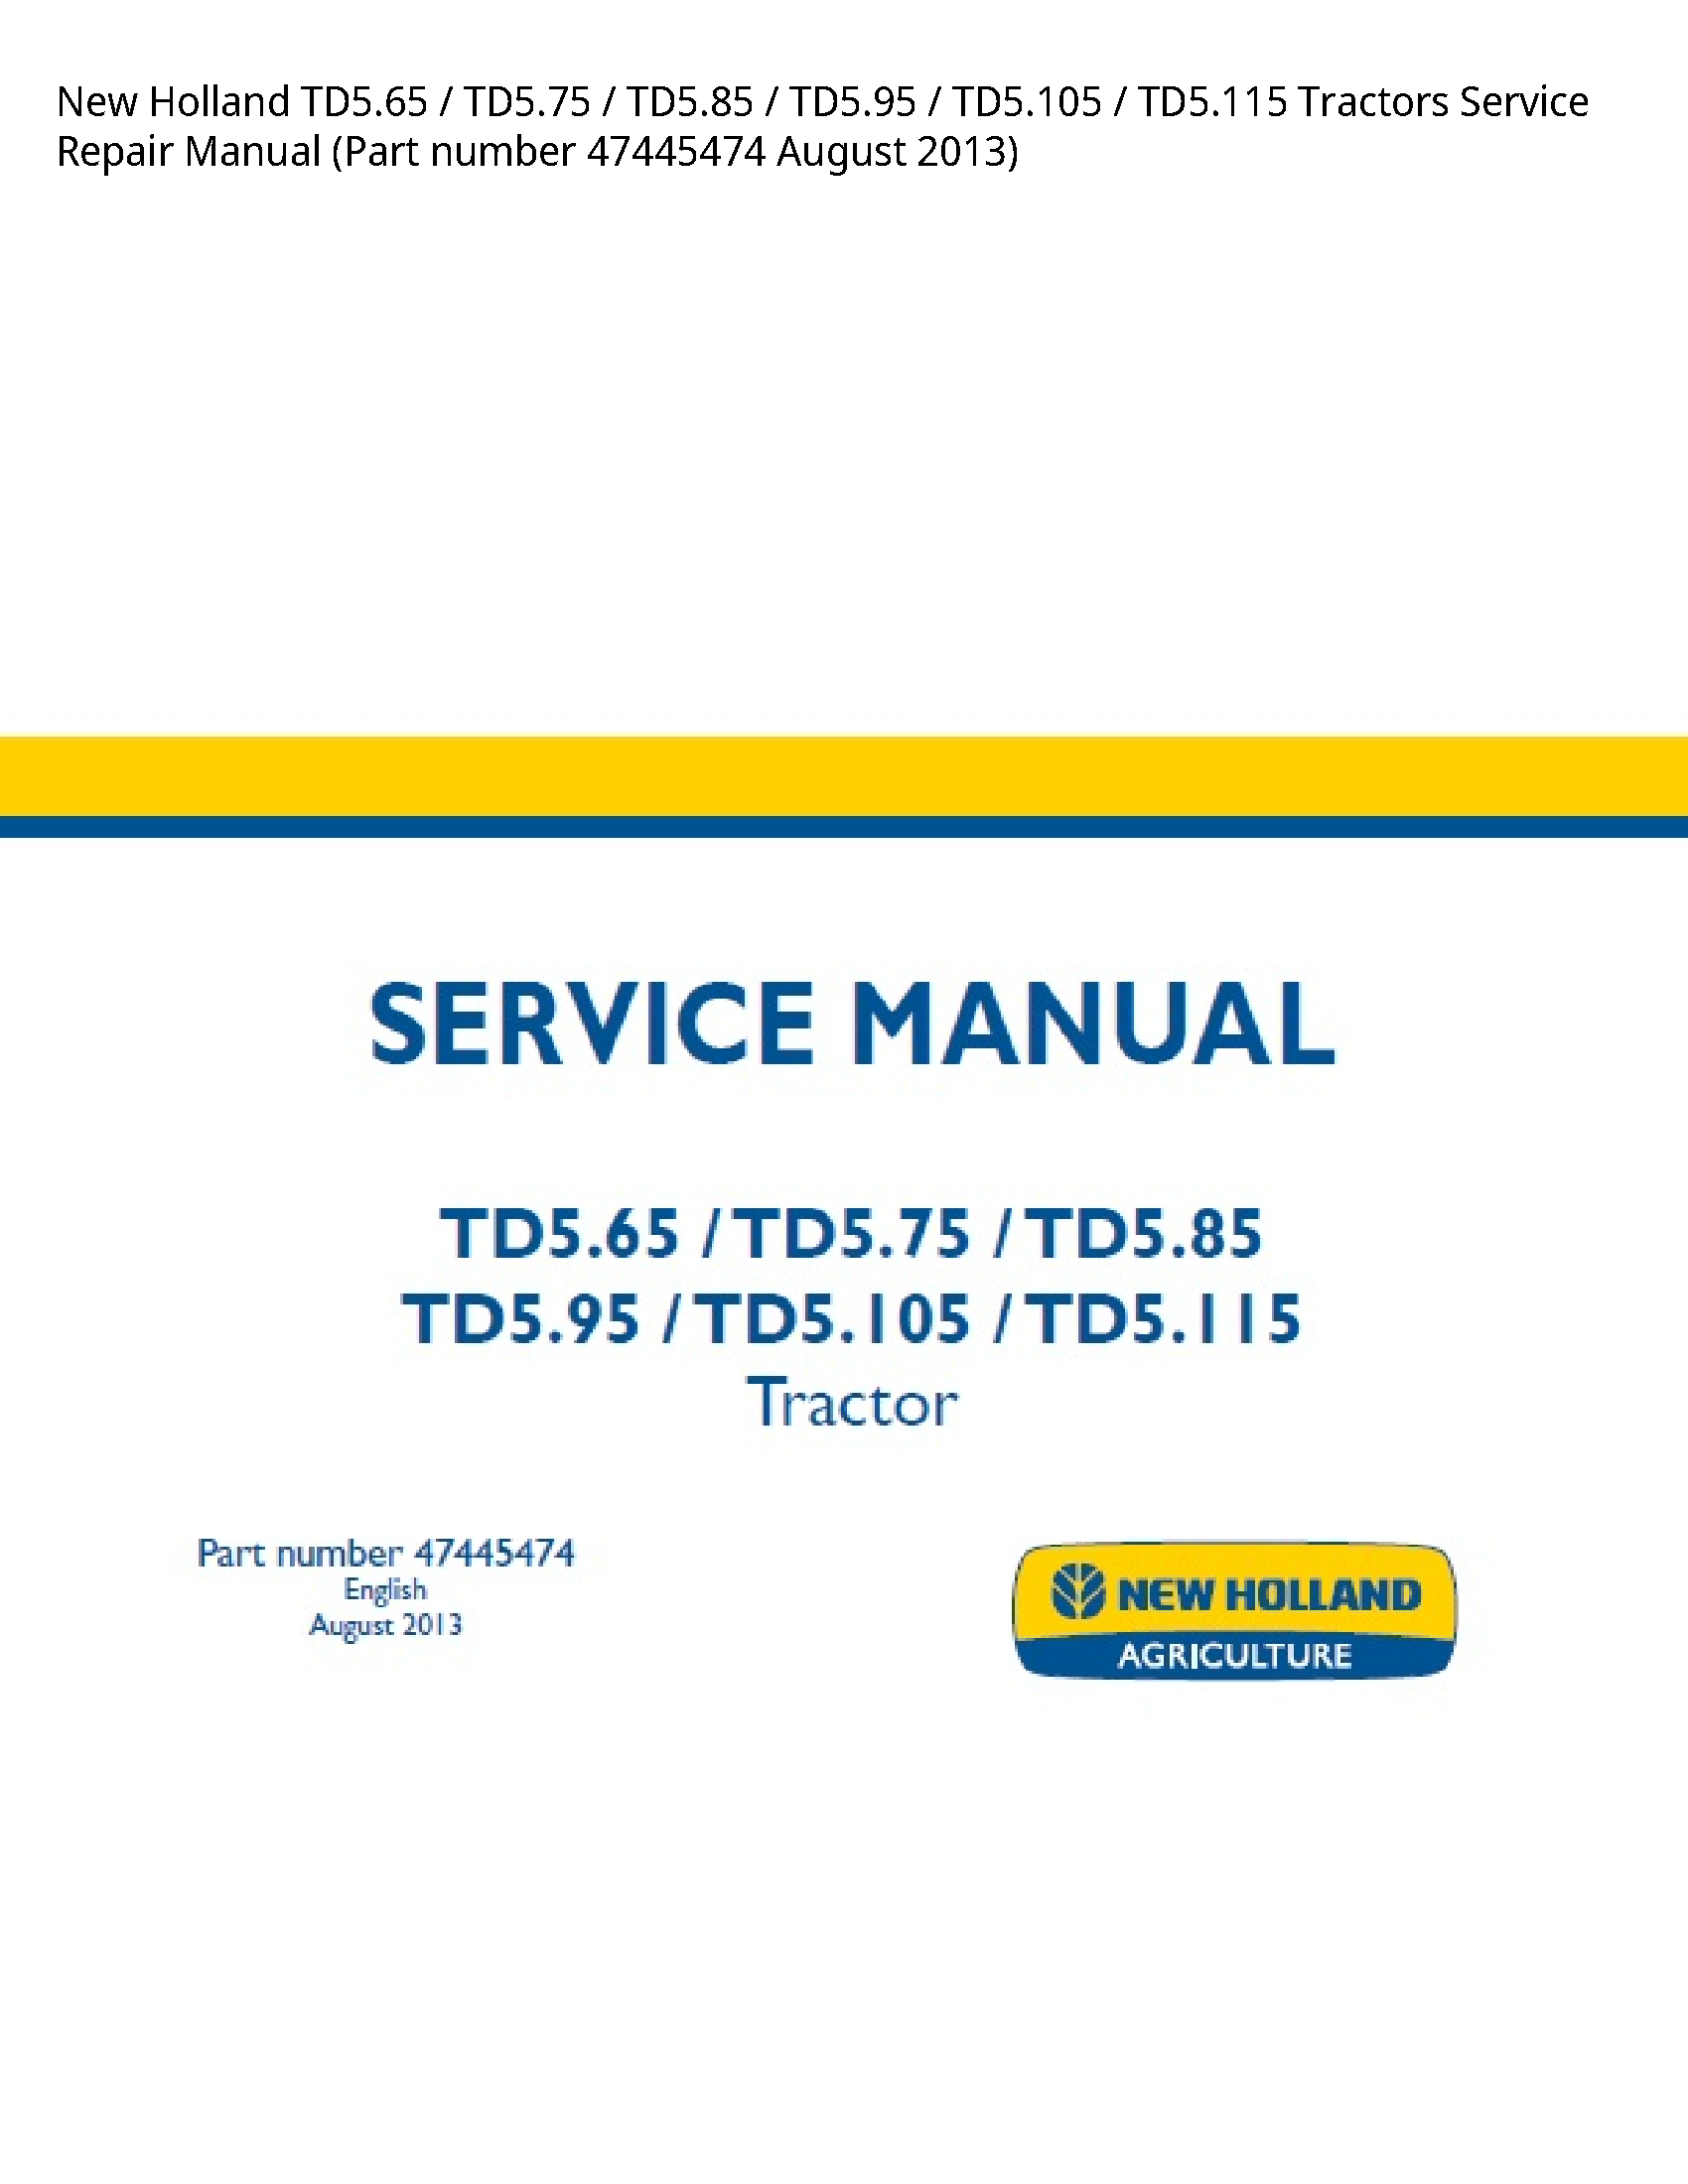 New Holland TD5.65 Tractors manual